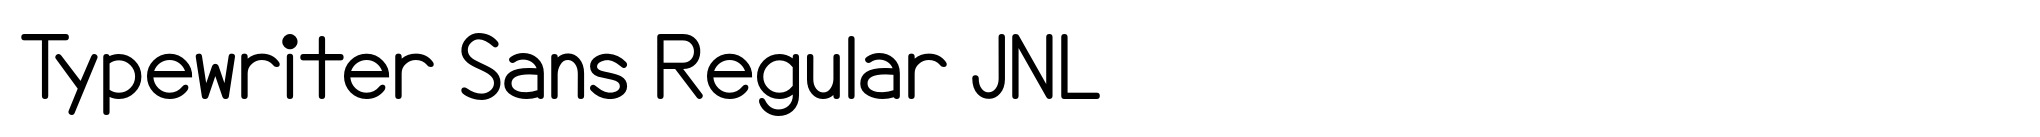 Typewriter Sans Regular JNL image